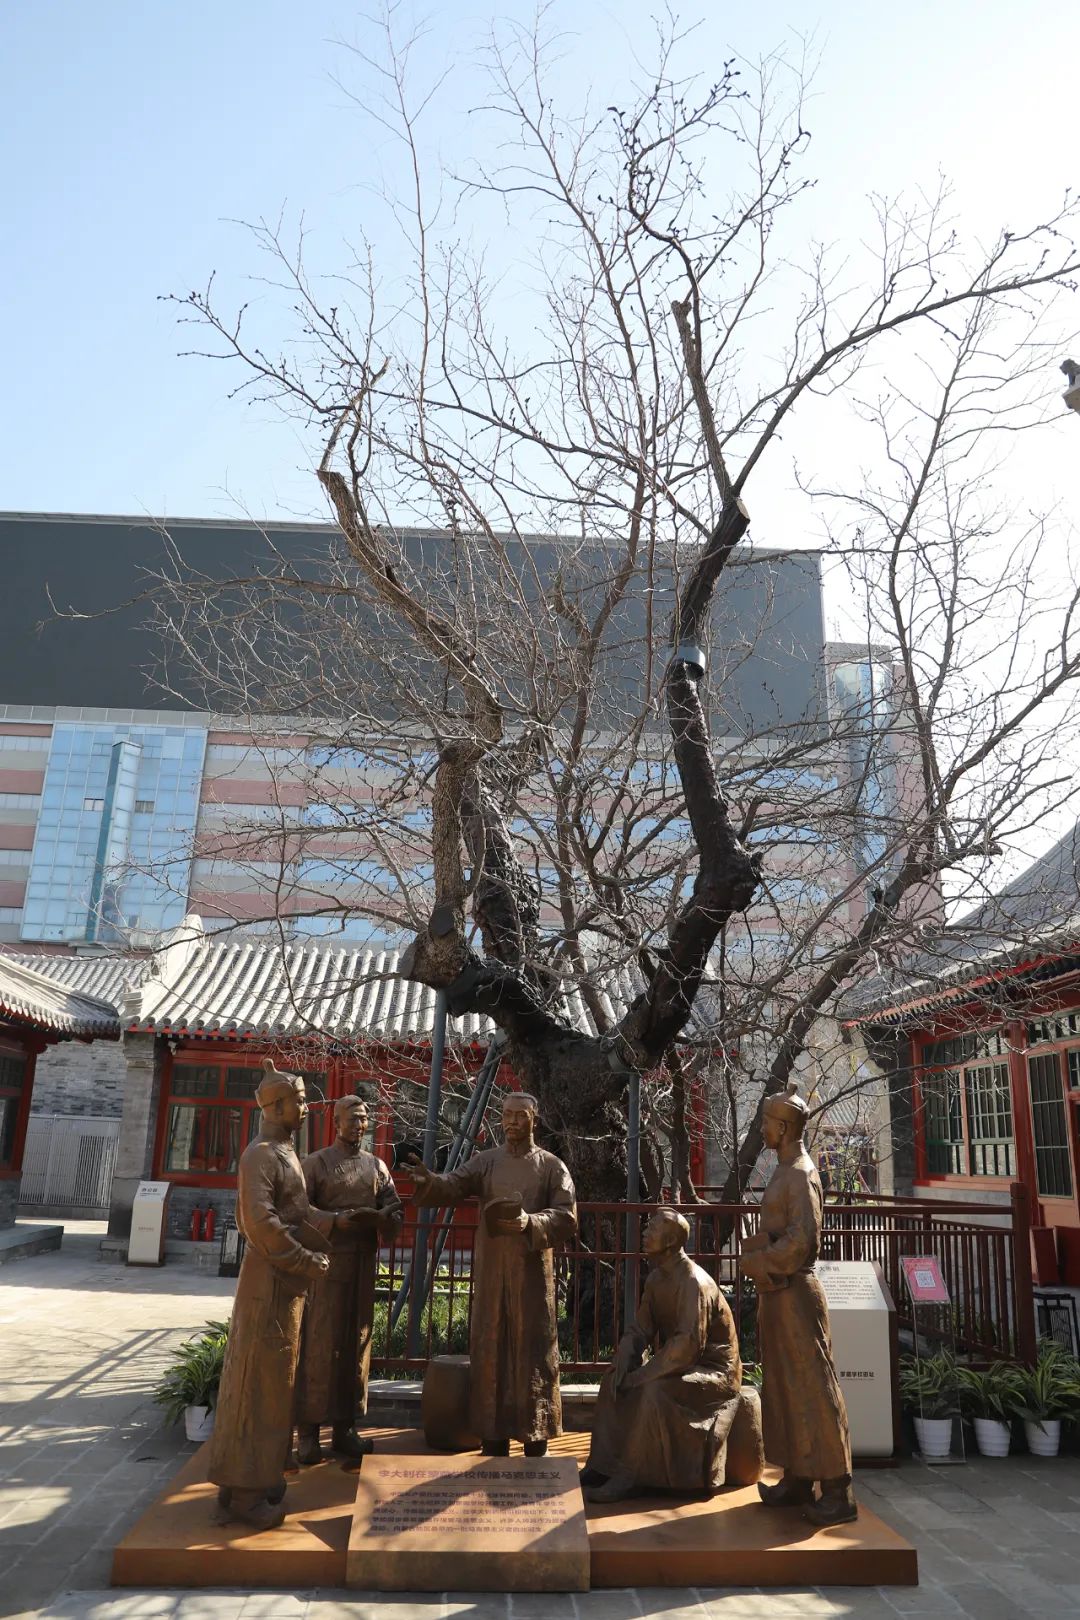 全國首個中華民族共同體體驗館，今天開館！